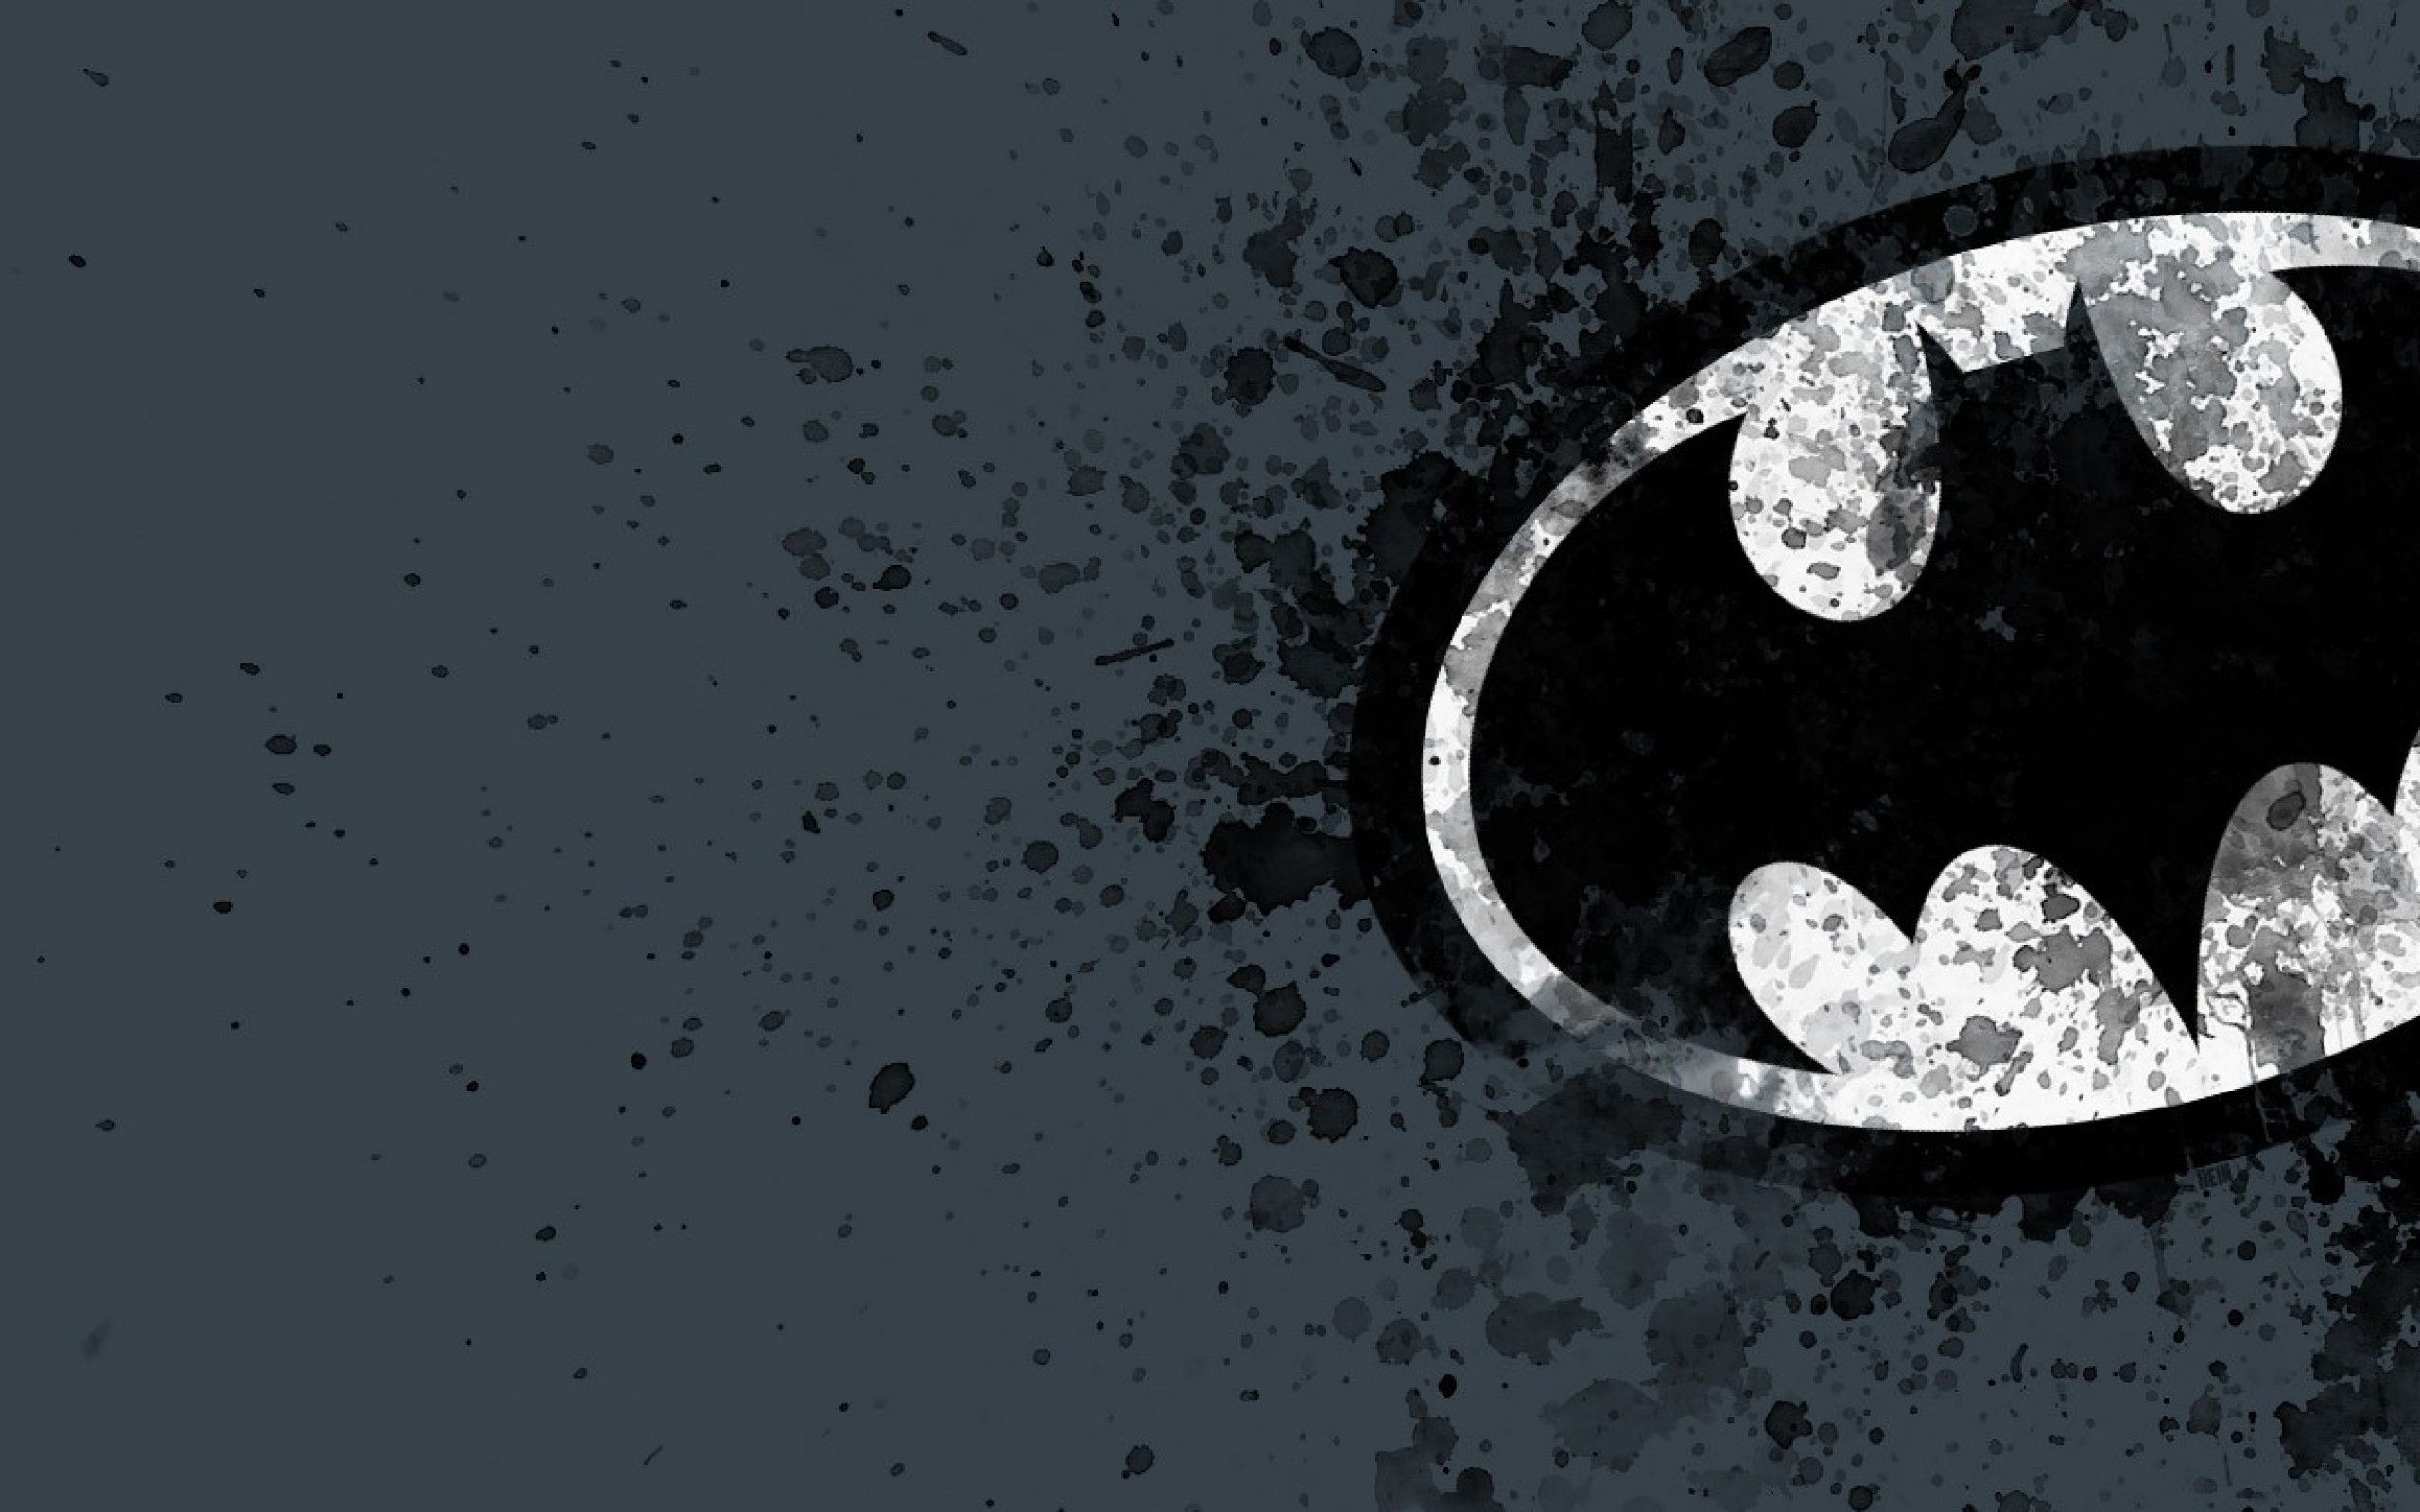 … 30 HD Batman Wallpaper Download